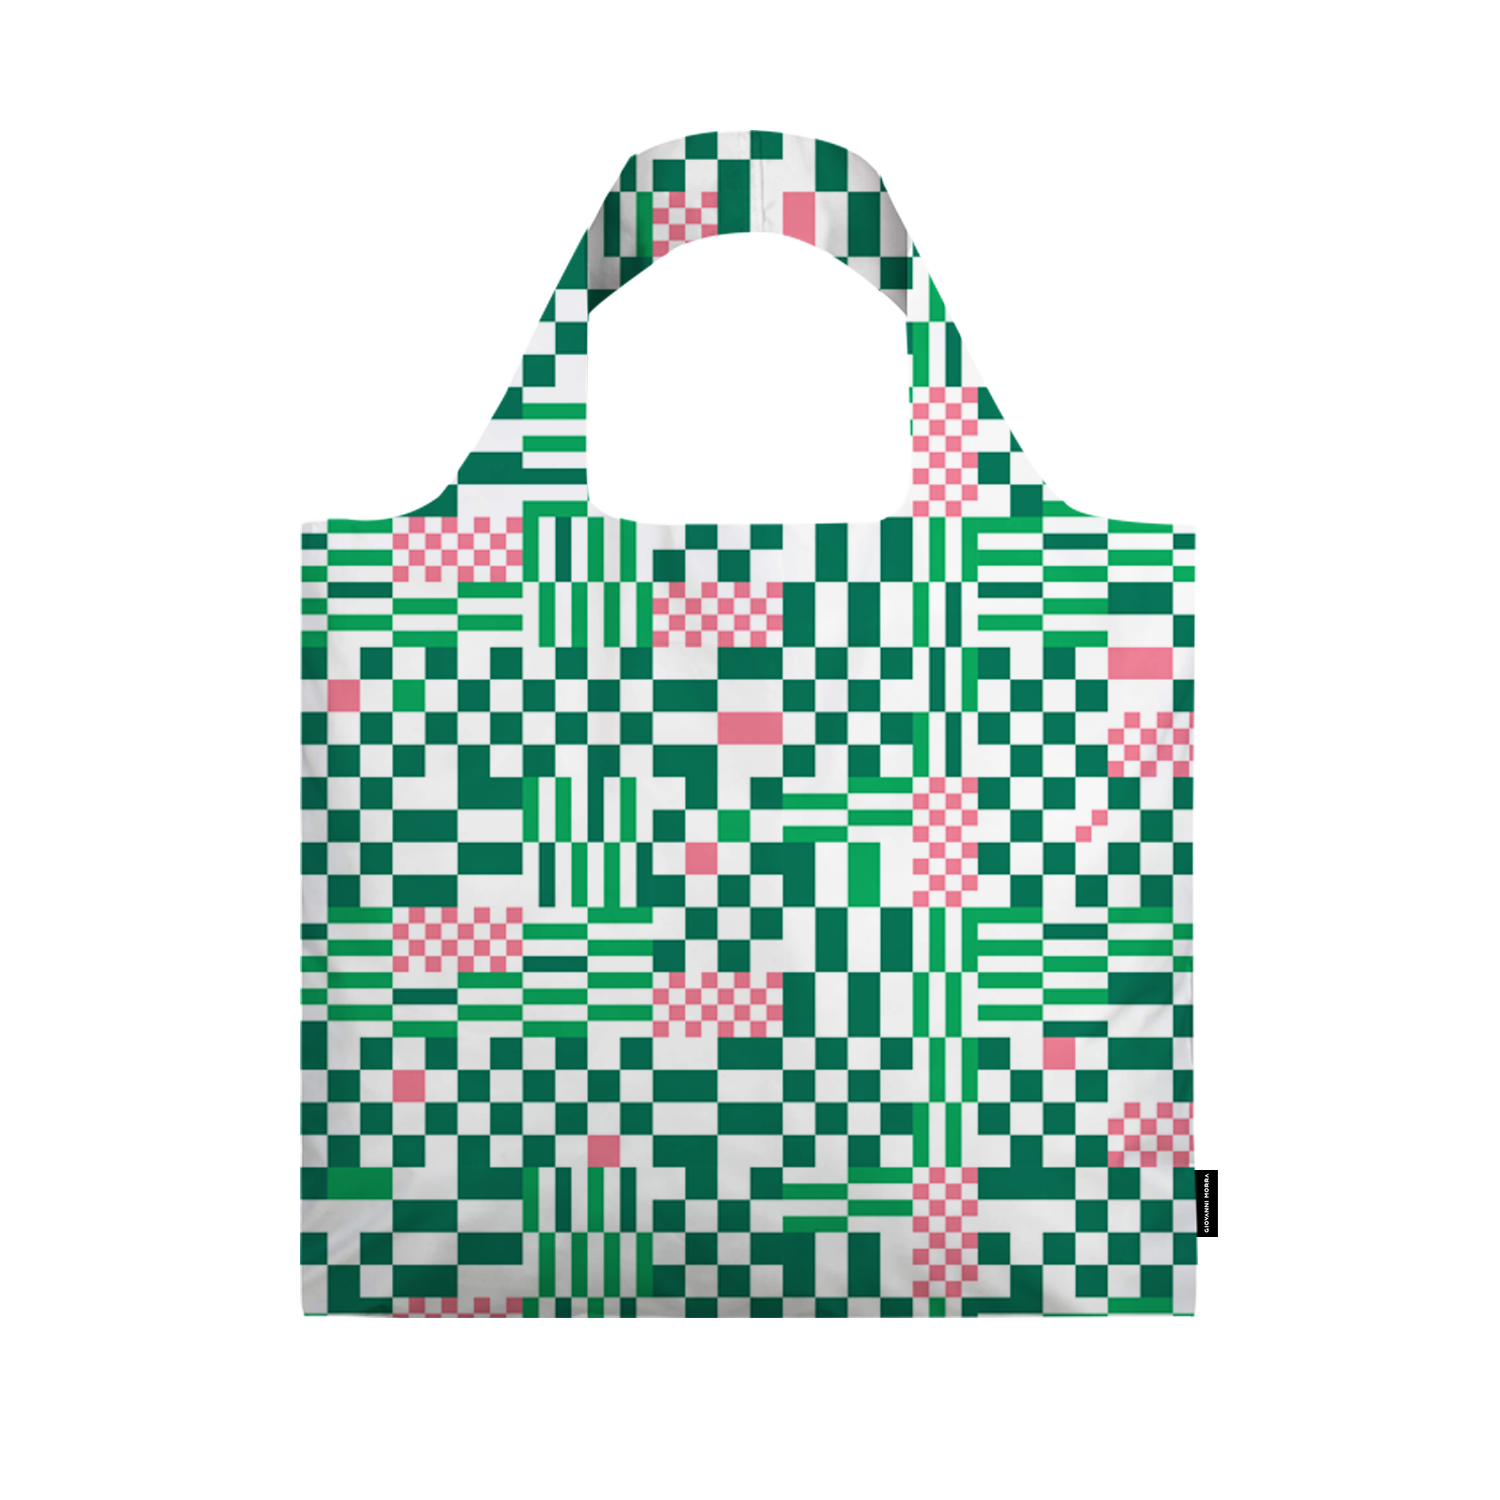 ჩანთა „კუბები“ (მწვანე)